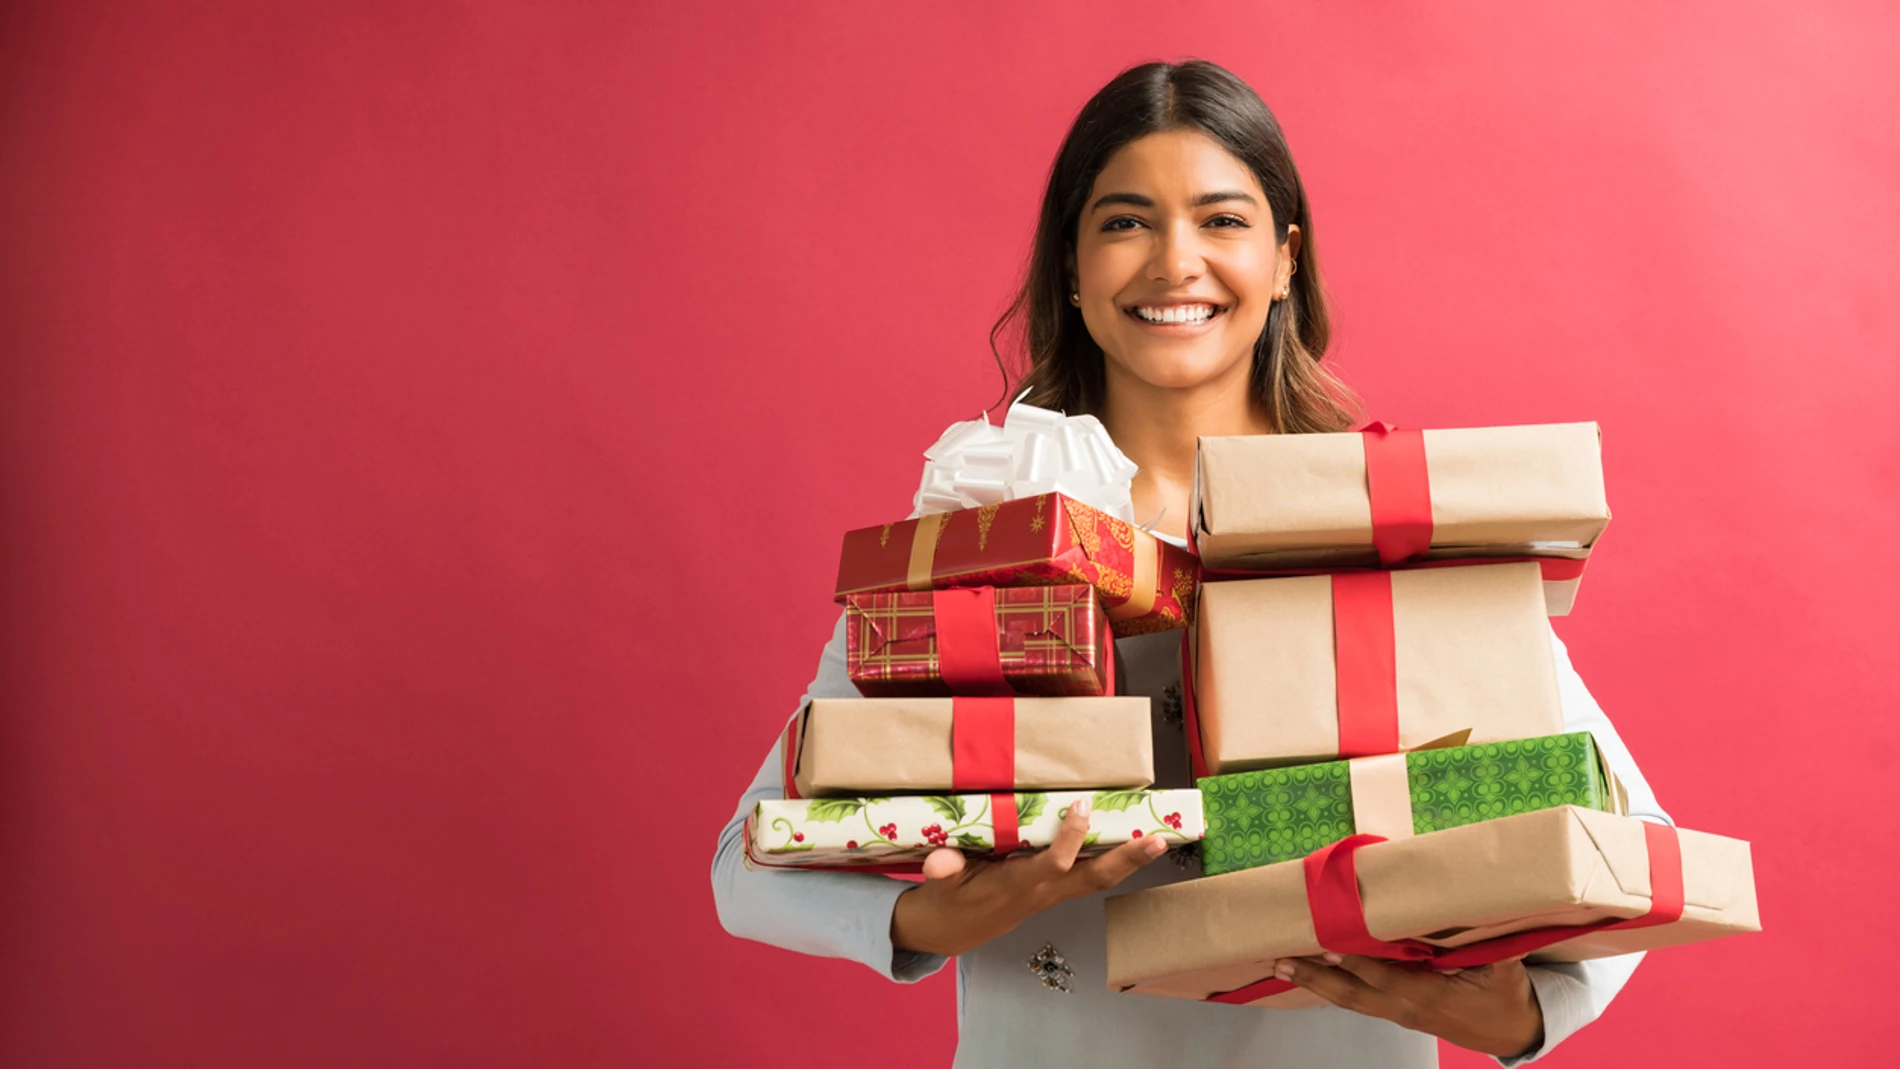 Ideas de regalos para mujeres de Navidad originales y